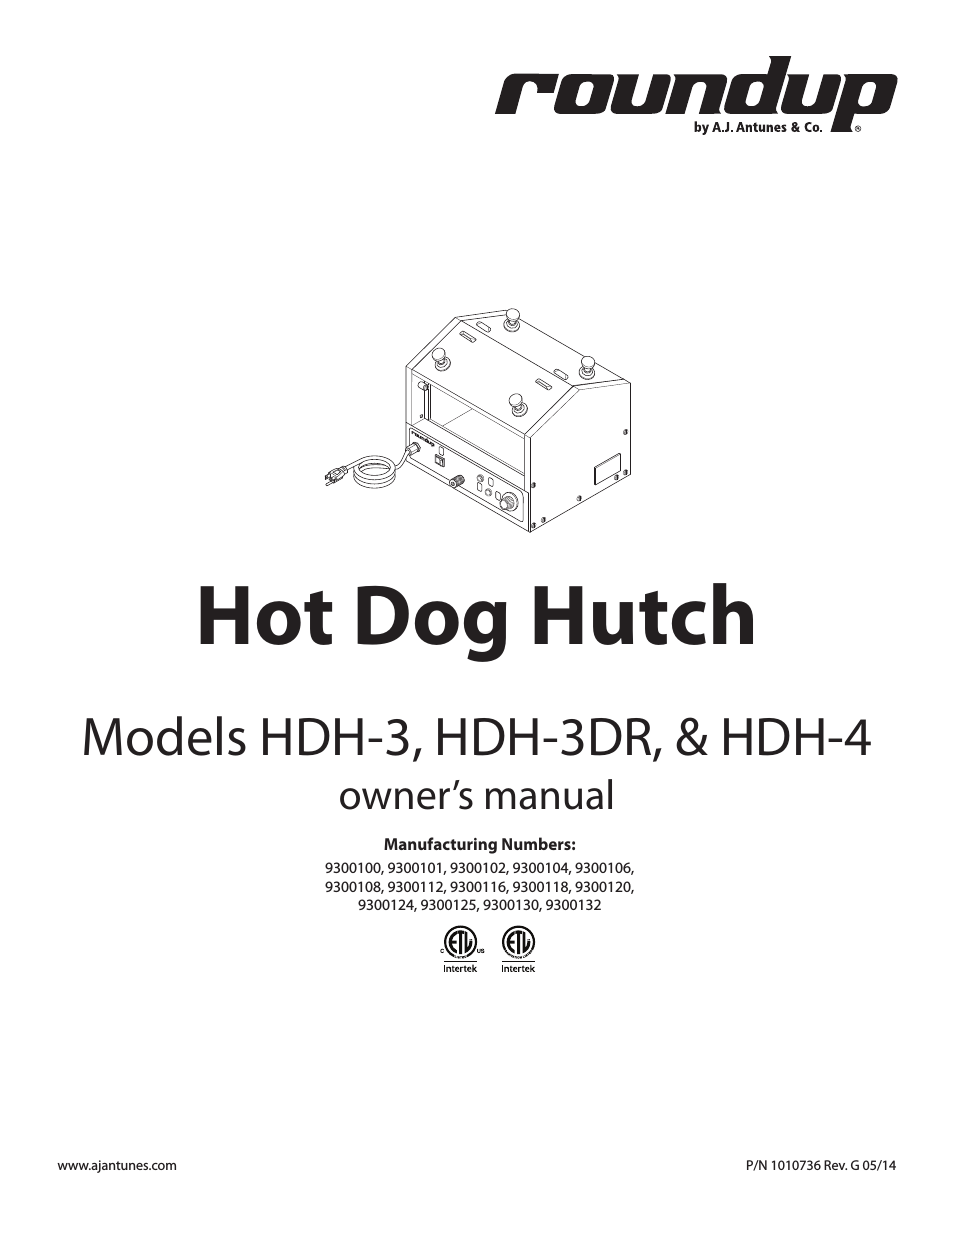 HDH-3 9300101